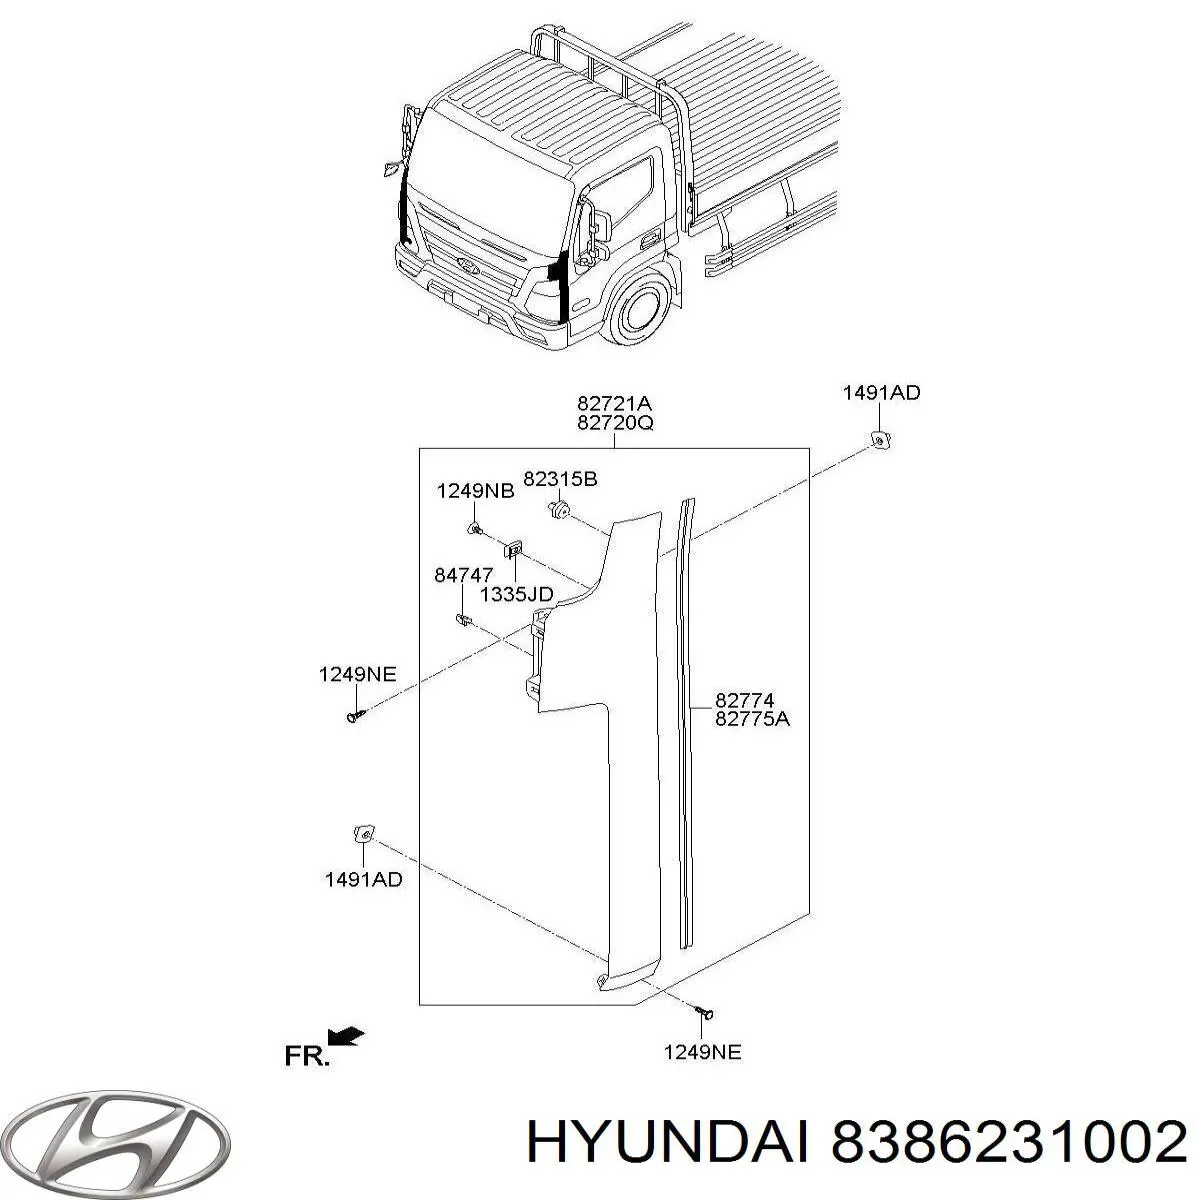 8386231002 Hyundai/Kia faro antiniebla trasero derecho